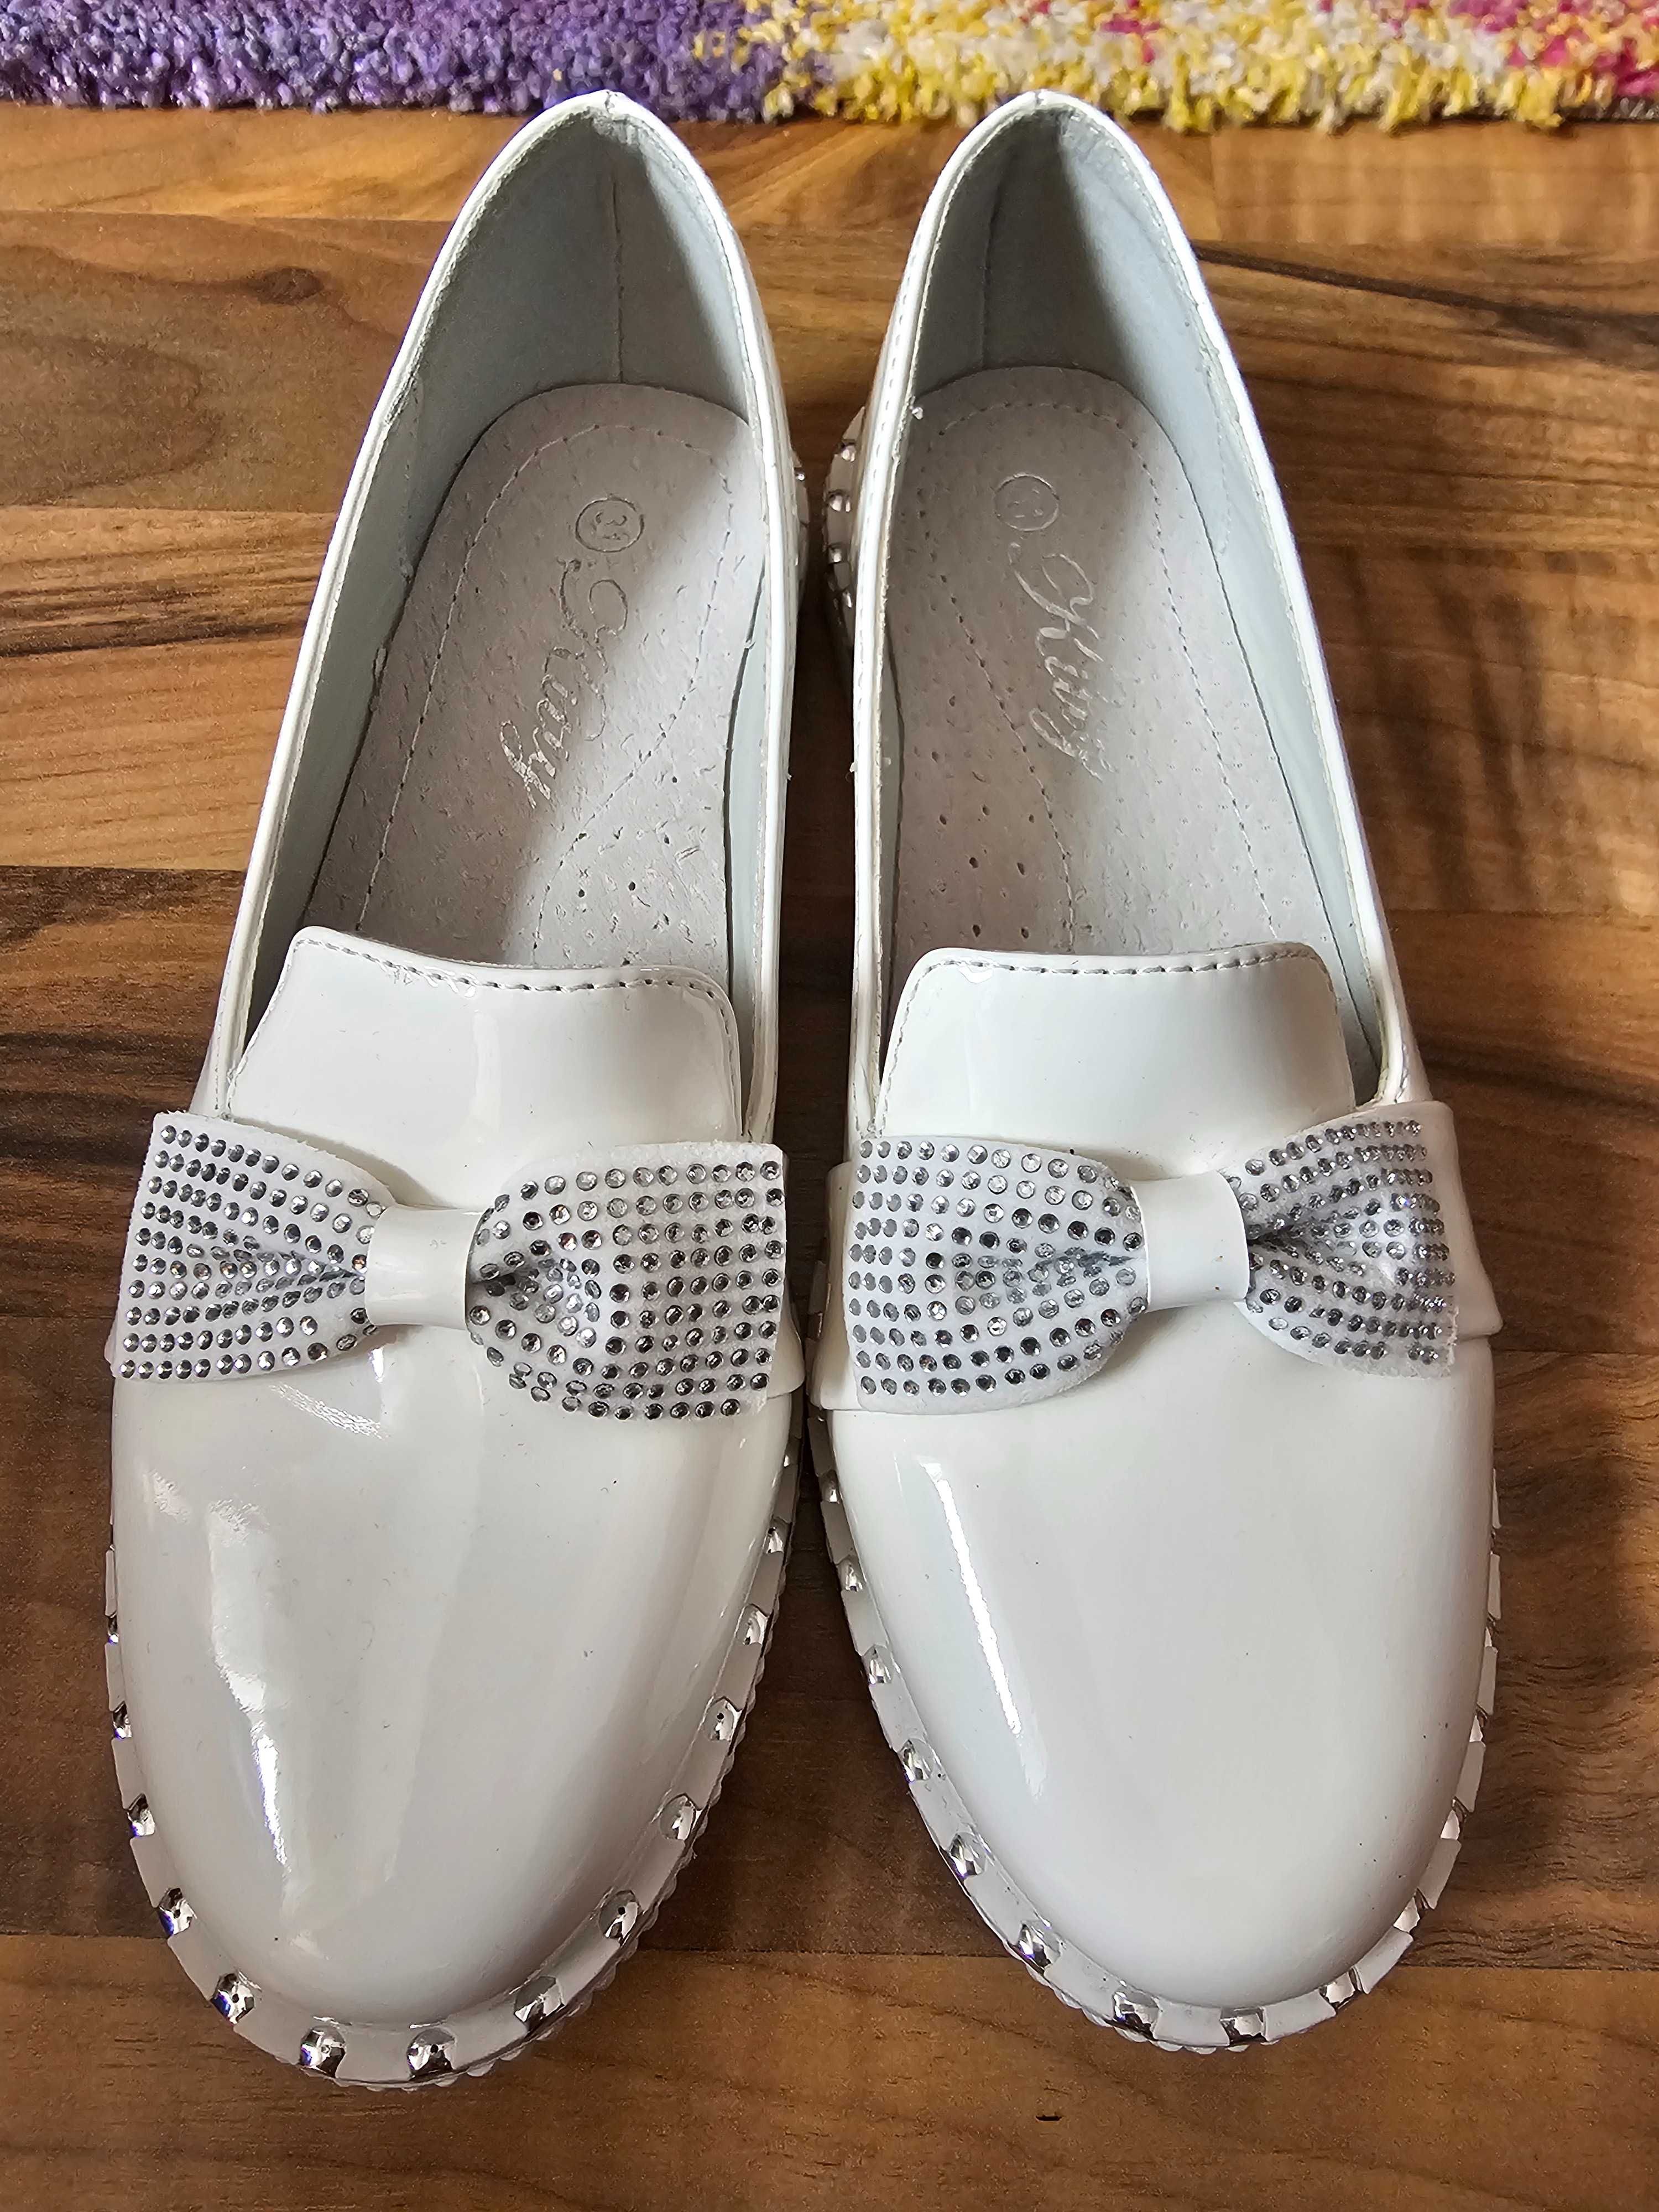 Pantofi albi de lac fetițe in stare perfecta mărimea 31